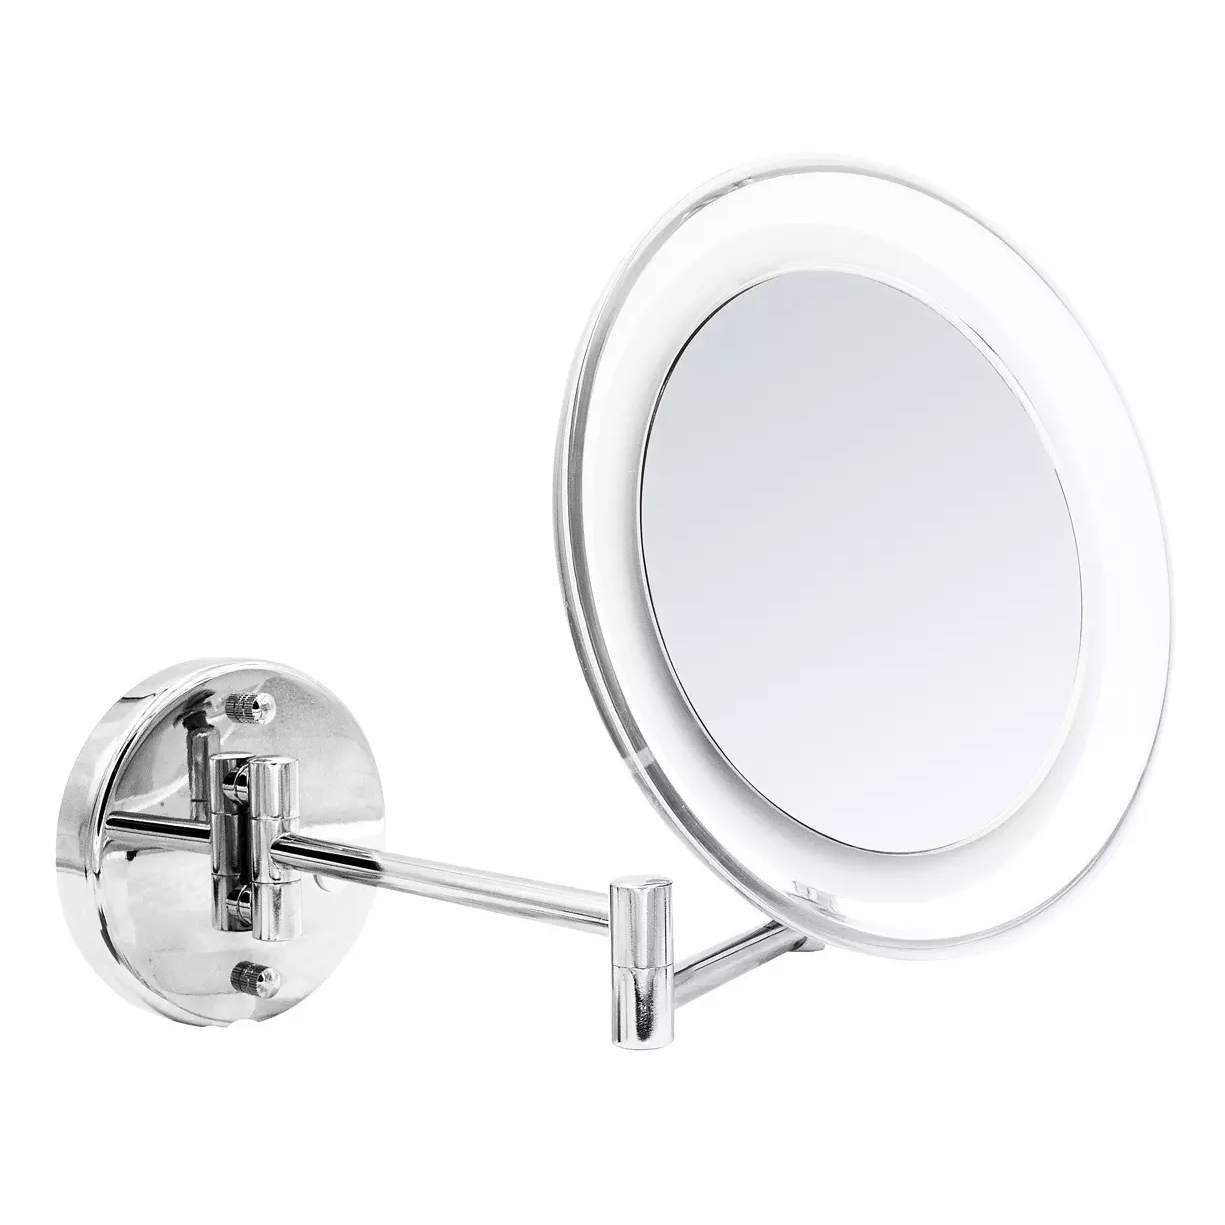 Зеркало косметическое Ridder Jasmin с подсветкой, увеличение 5x, USB/батарейки, хром зеркало косметическое ridder vivian m 1x 2x 5x увеличение с подсветкой сенсор usb